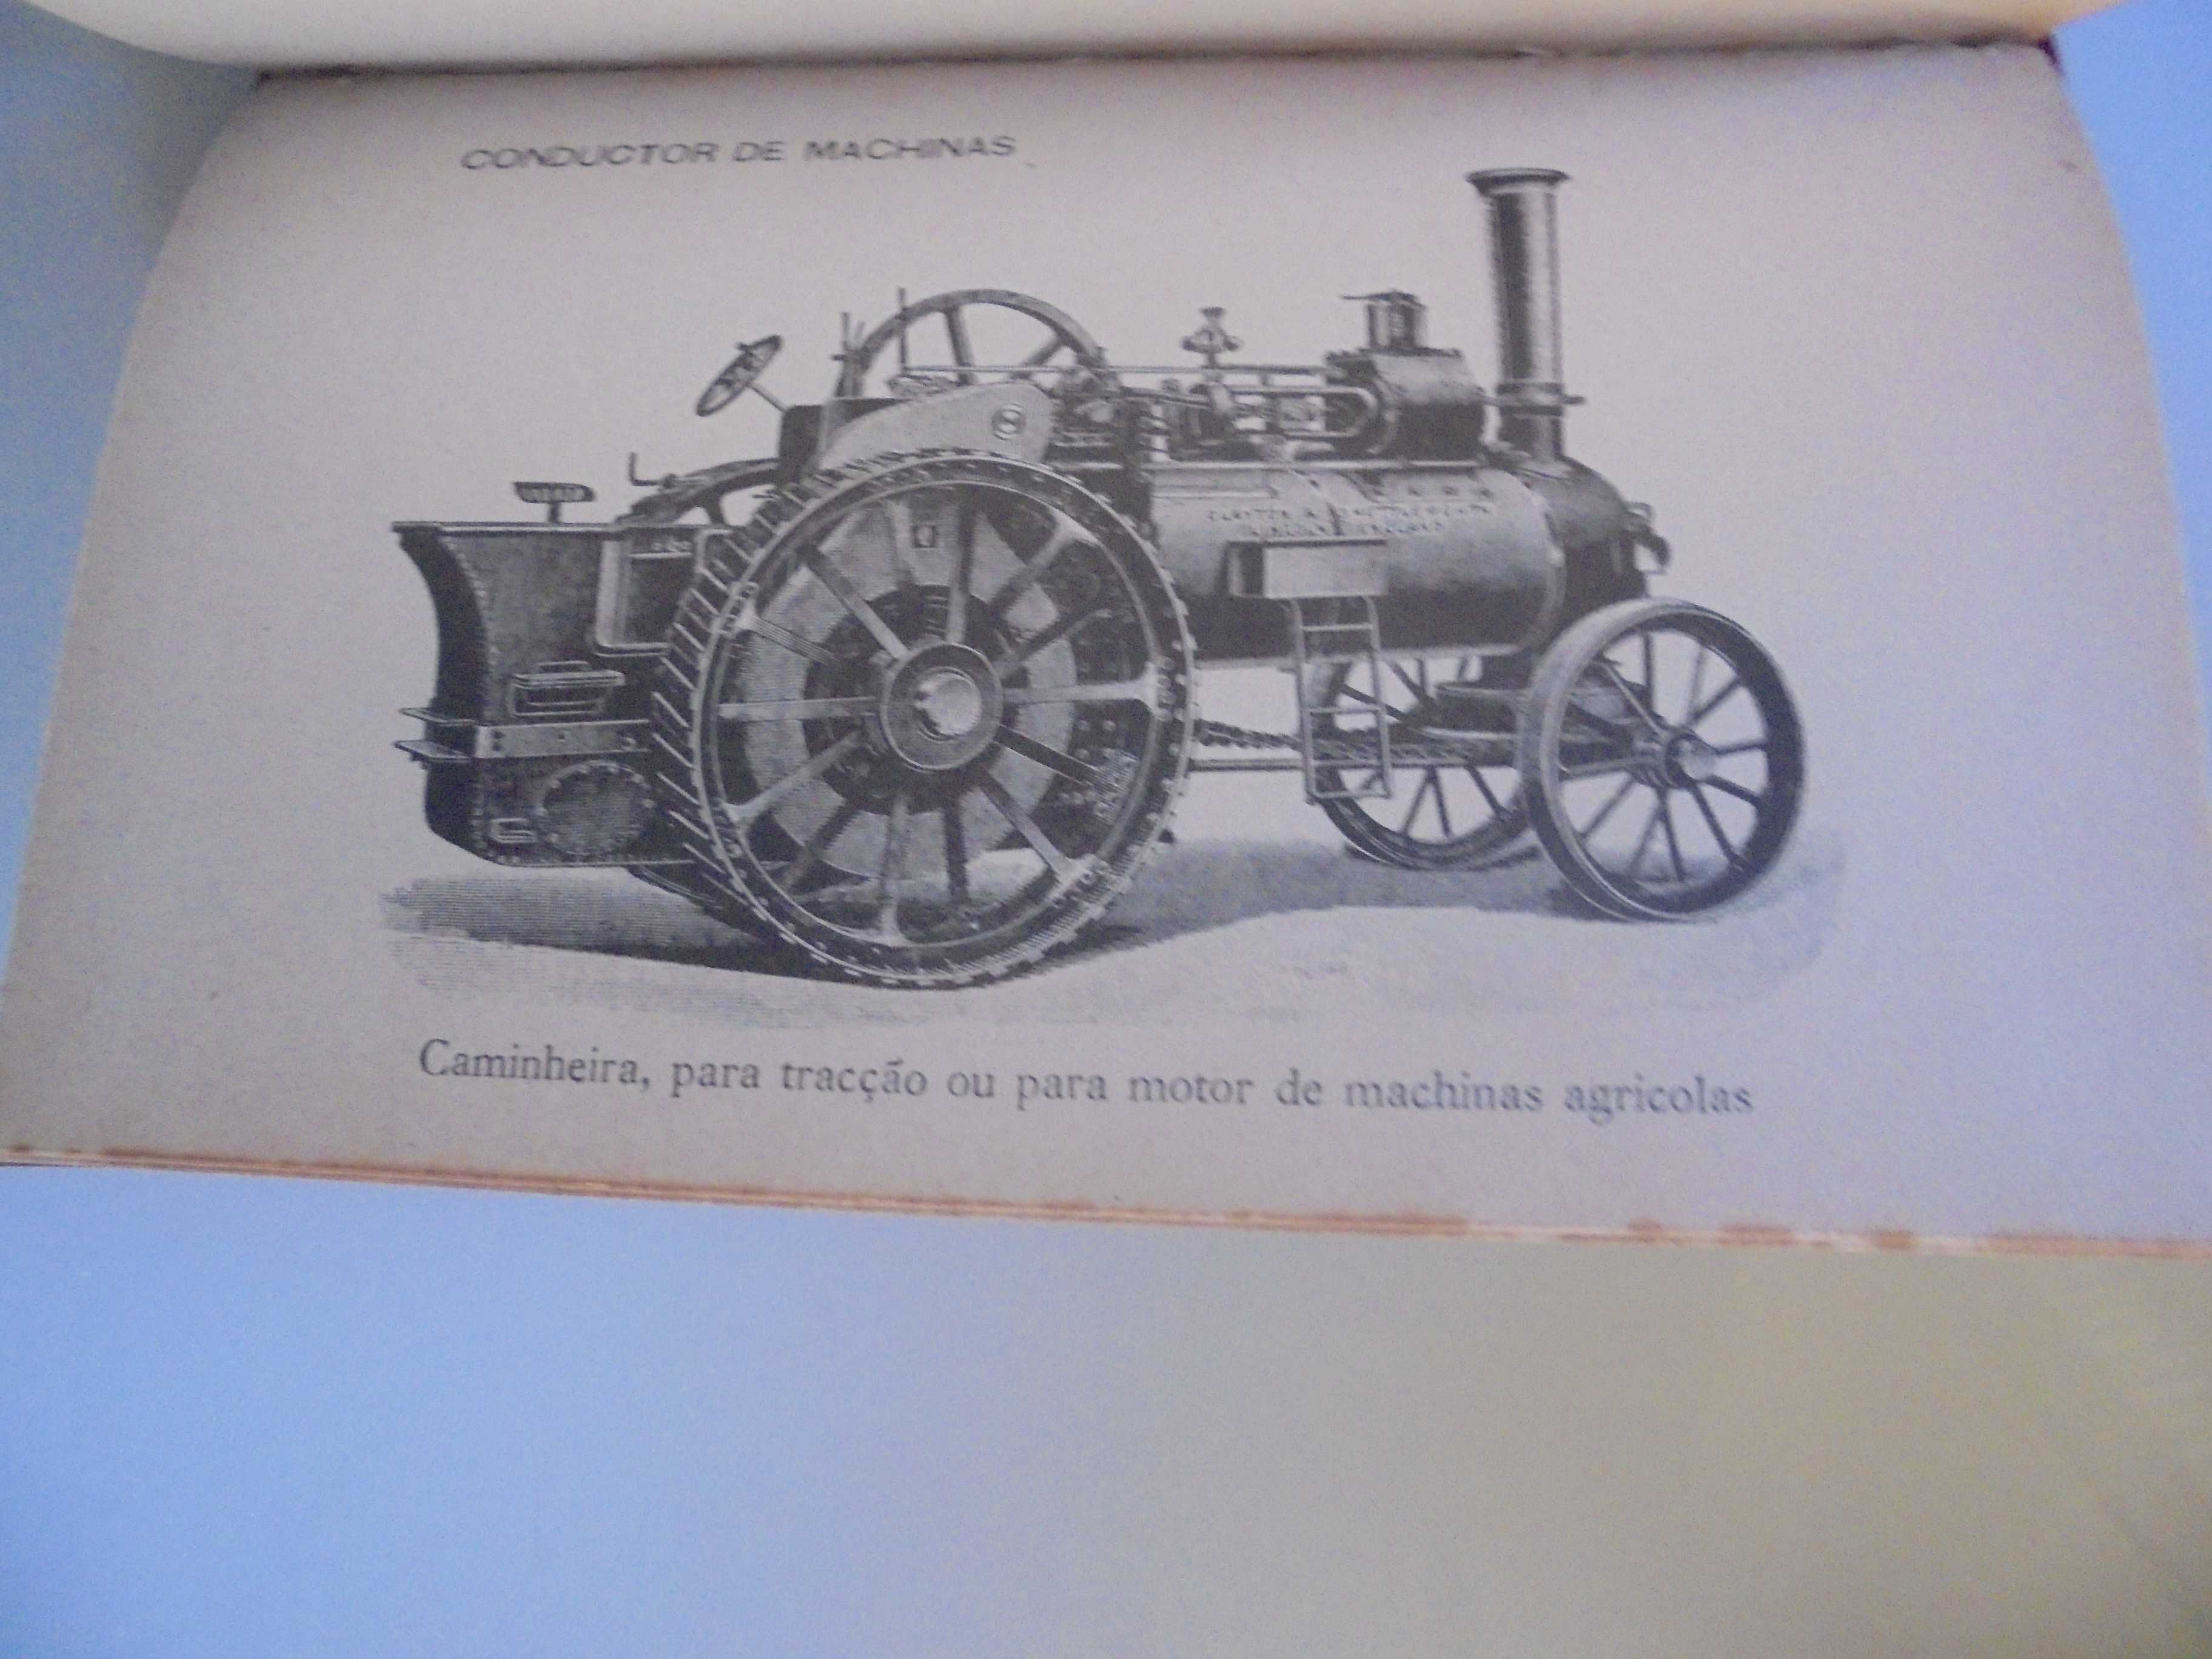 Manual do Condutor de Machinas;Biblioteca de Instrucção